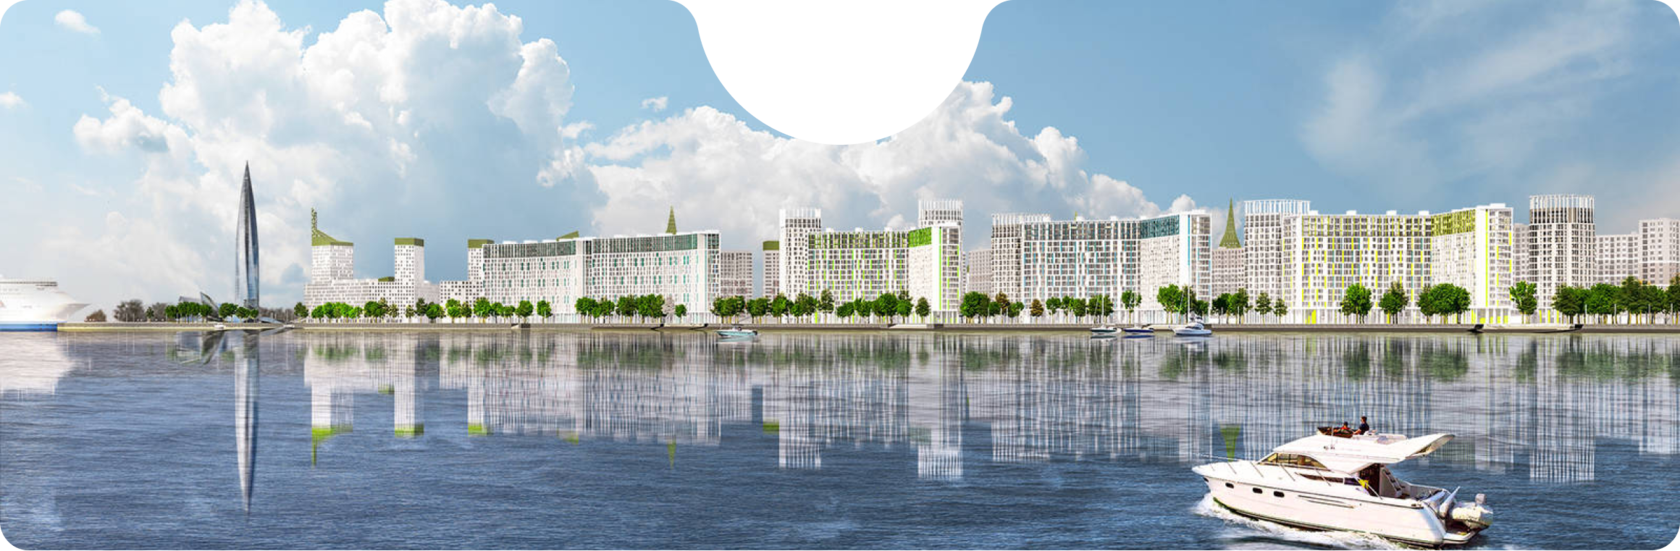 Одна из новостроек Санкт–Петербурга, ЖК "Морская набережная", расположенная на берегу Балтийского залива рядом с Лахта–центром.